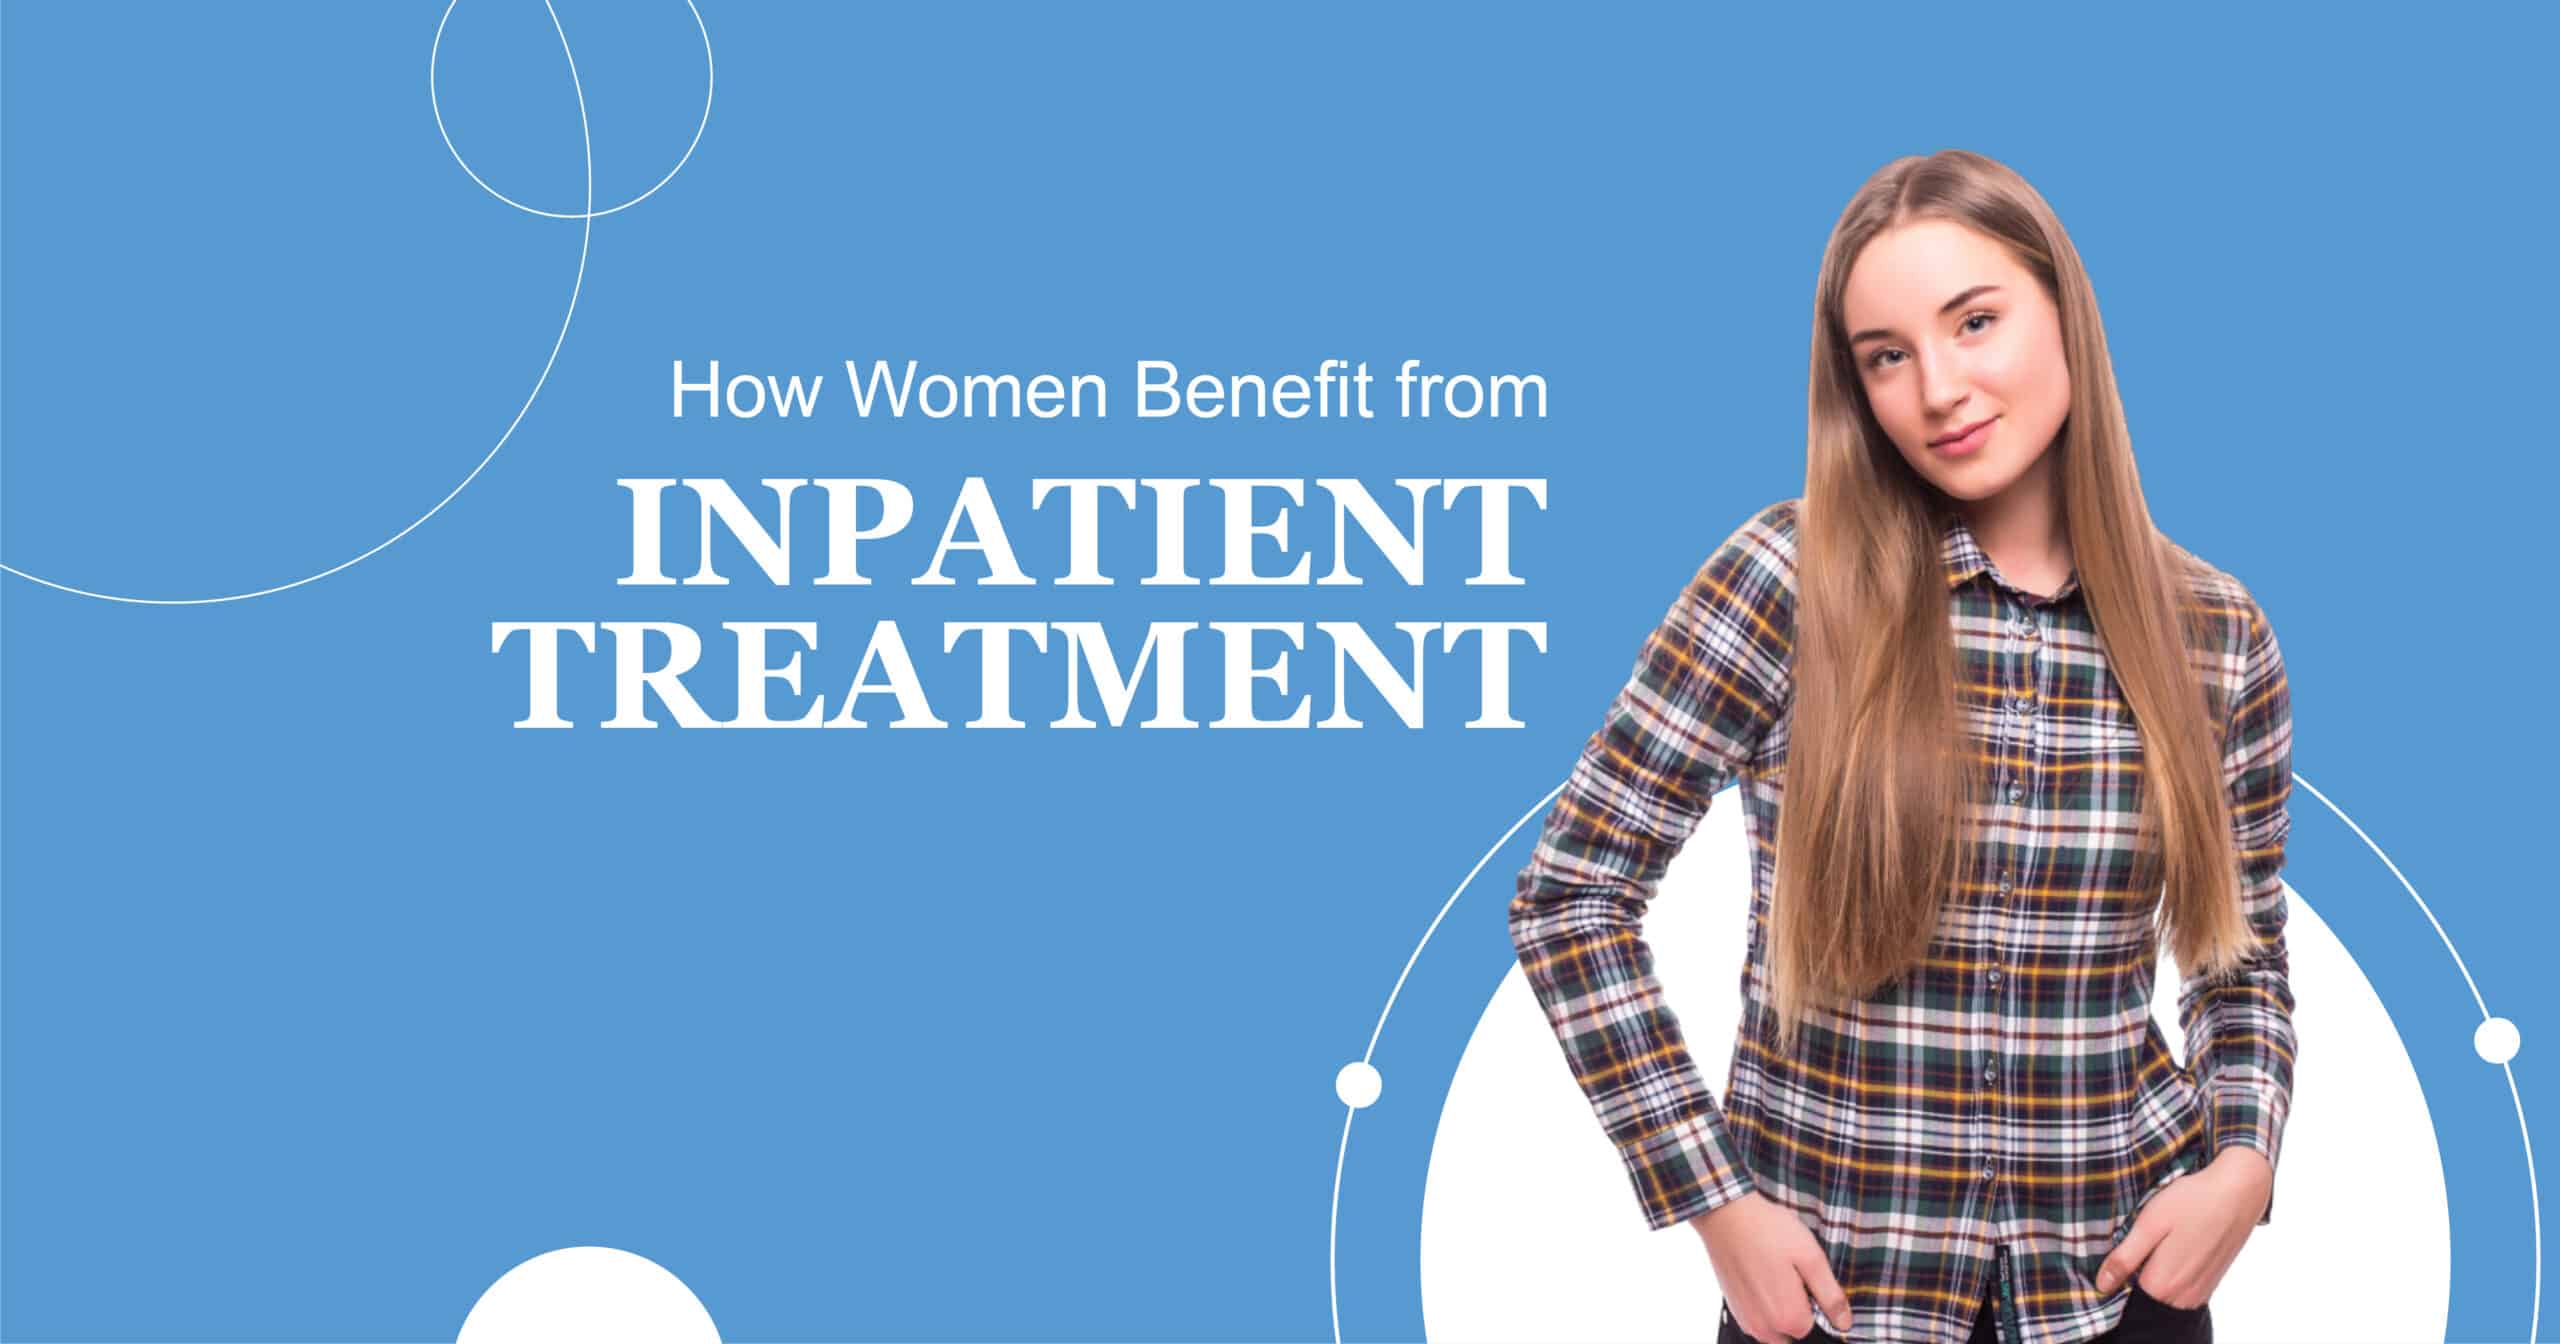 Inpatient Treatment For Women